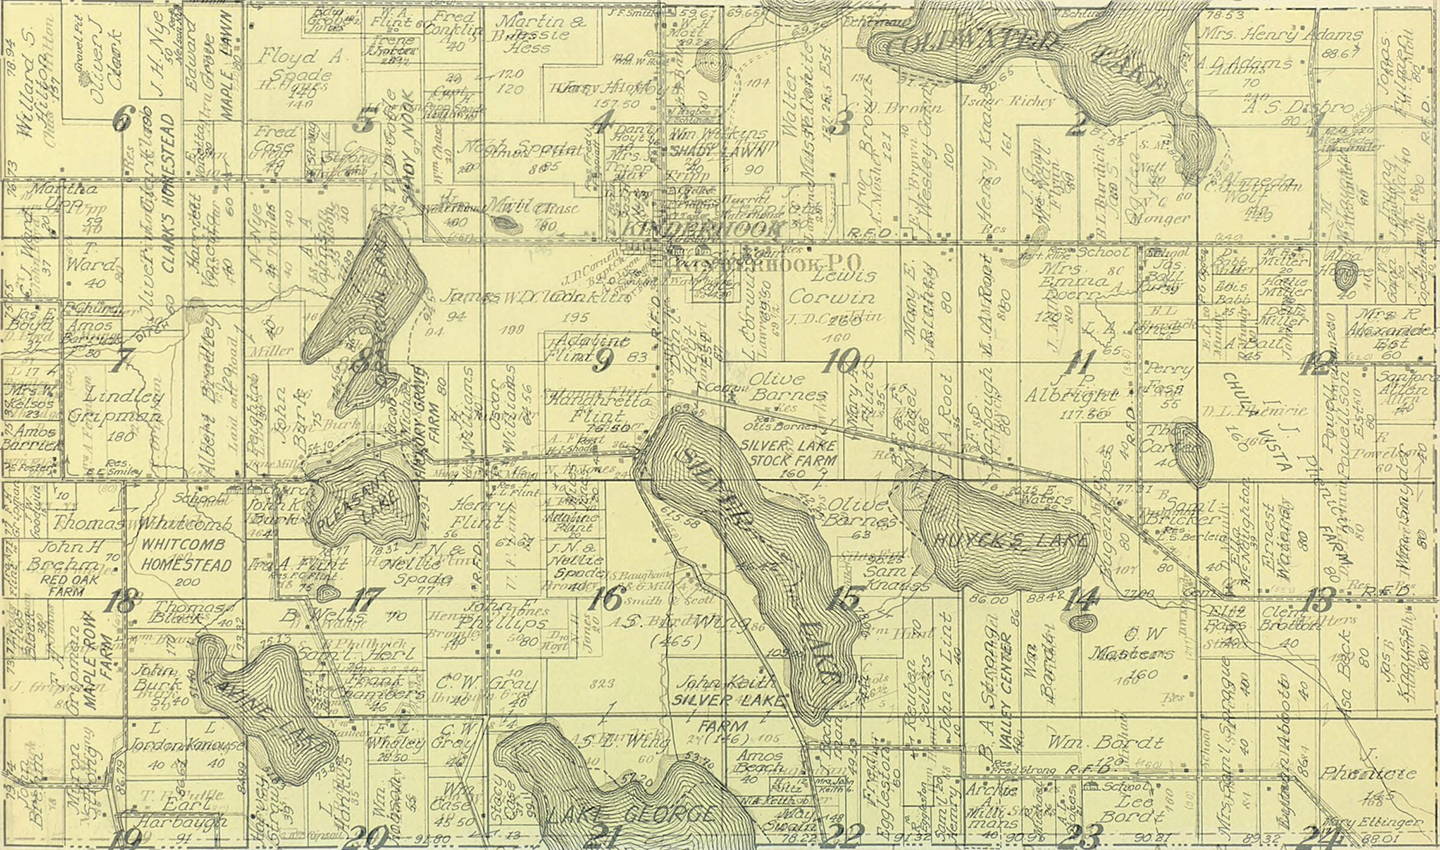 1872 Kinderhook Township, Michigan landownership map